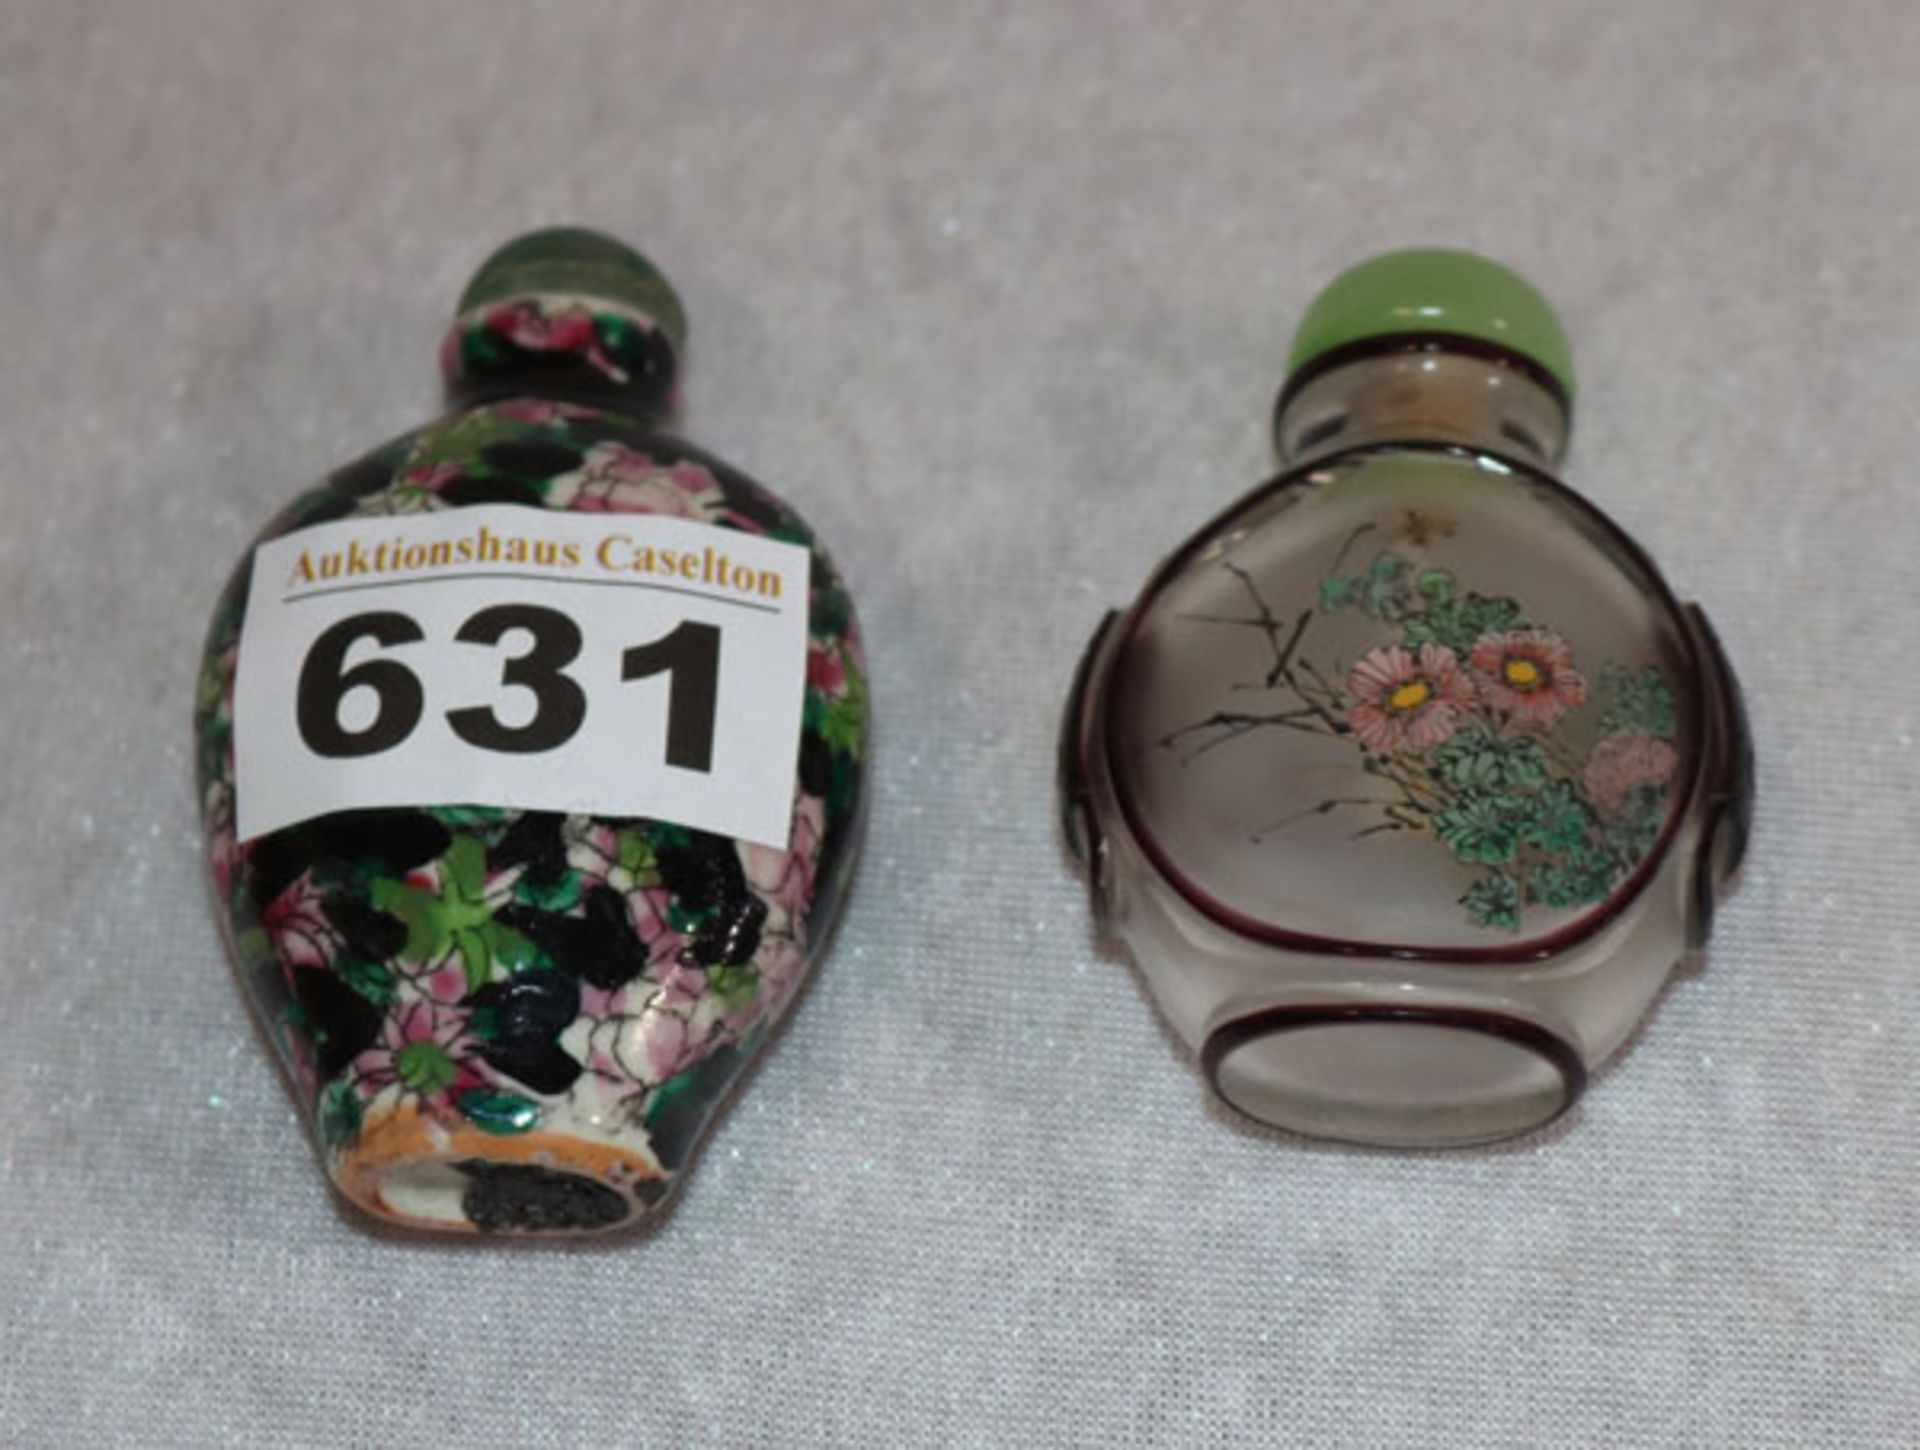 2 asiatische Parfümflakons, Glas mit Bumendekor, H 6 cm, und Keramik mit Blumendekor, H 7 cm,